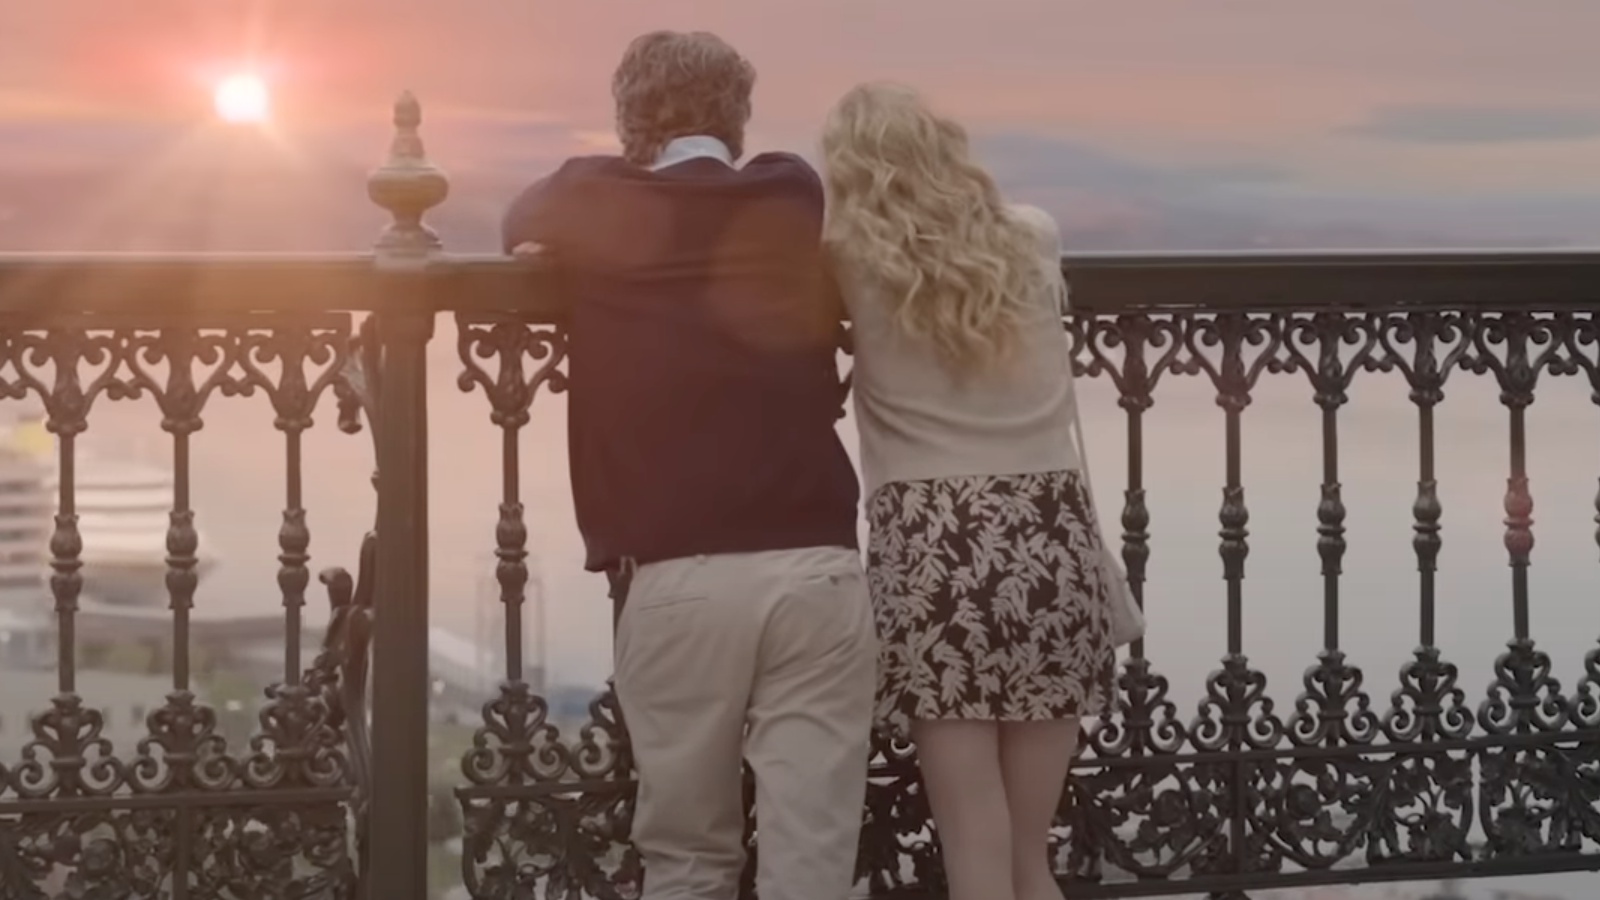 Il trailer di French Girl anticipa la commedia romantica con Vanessa Hudgens e Zach Braff